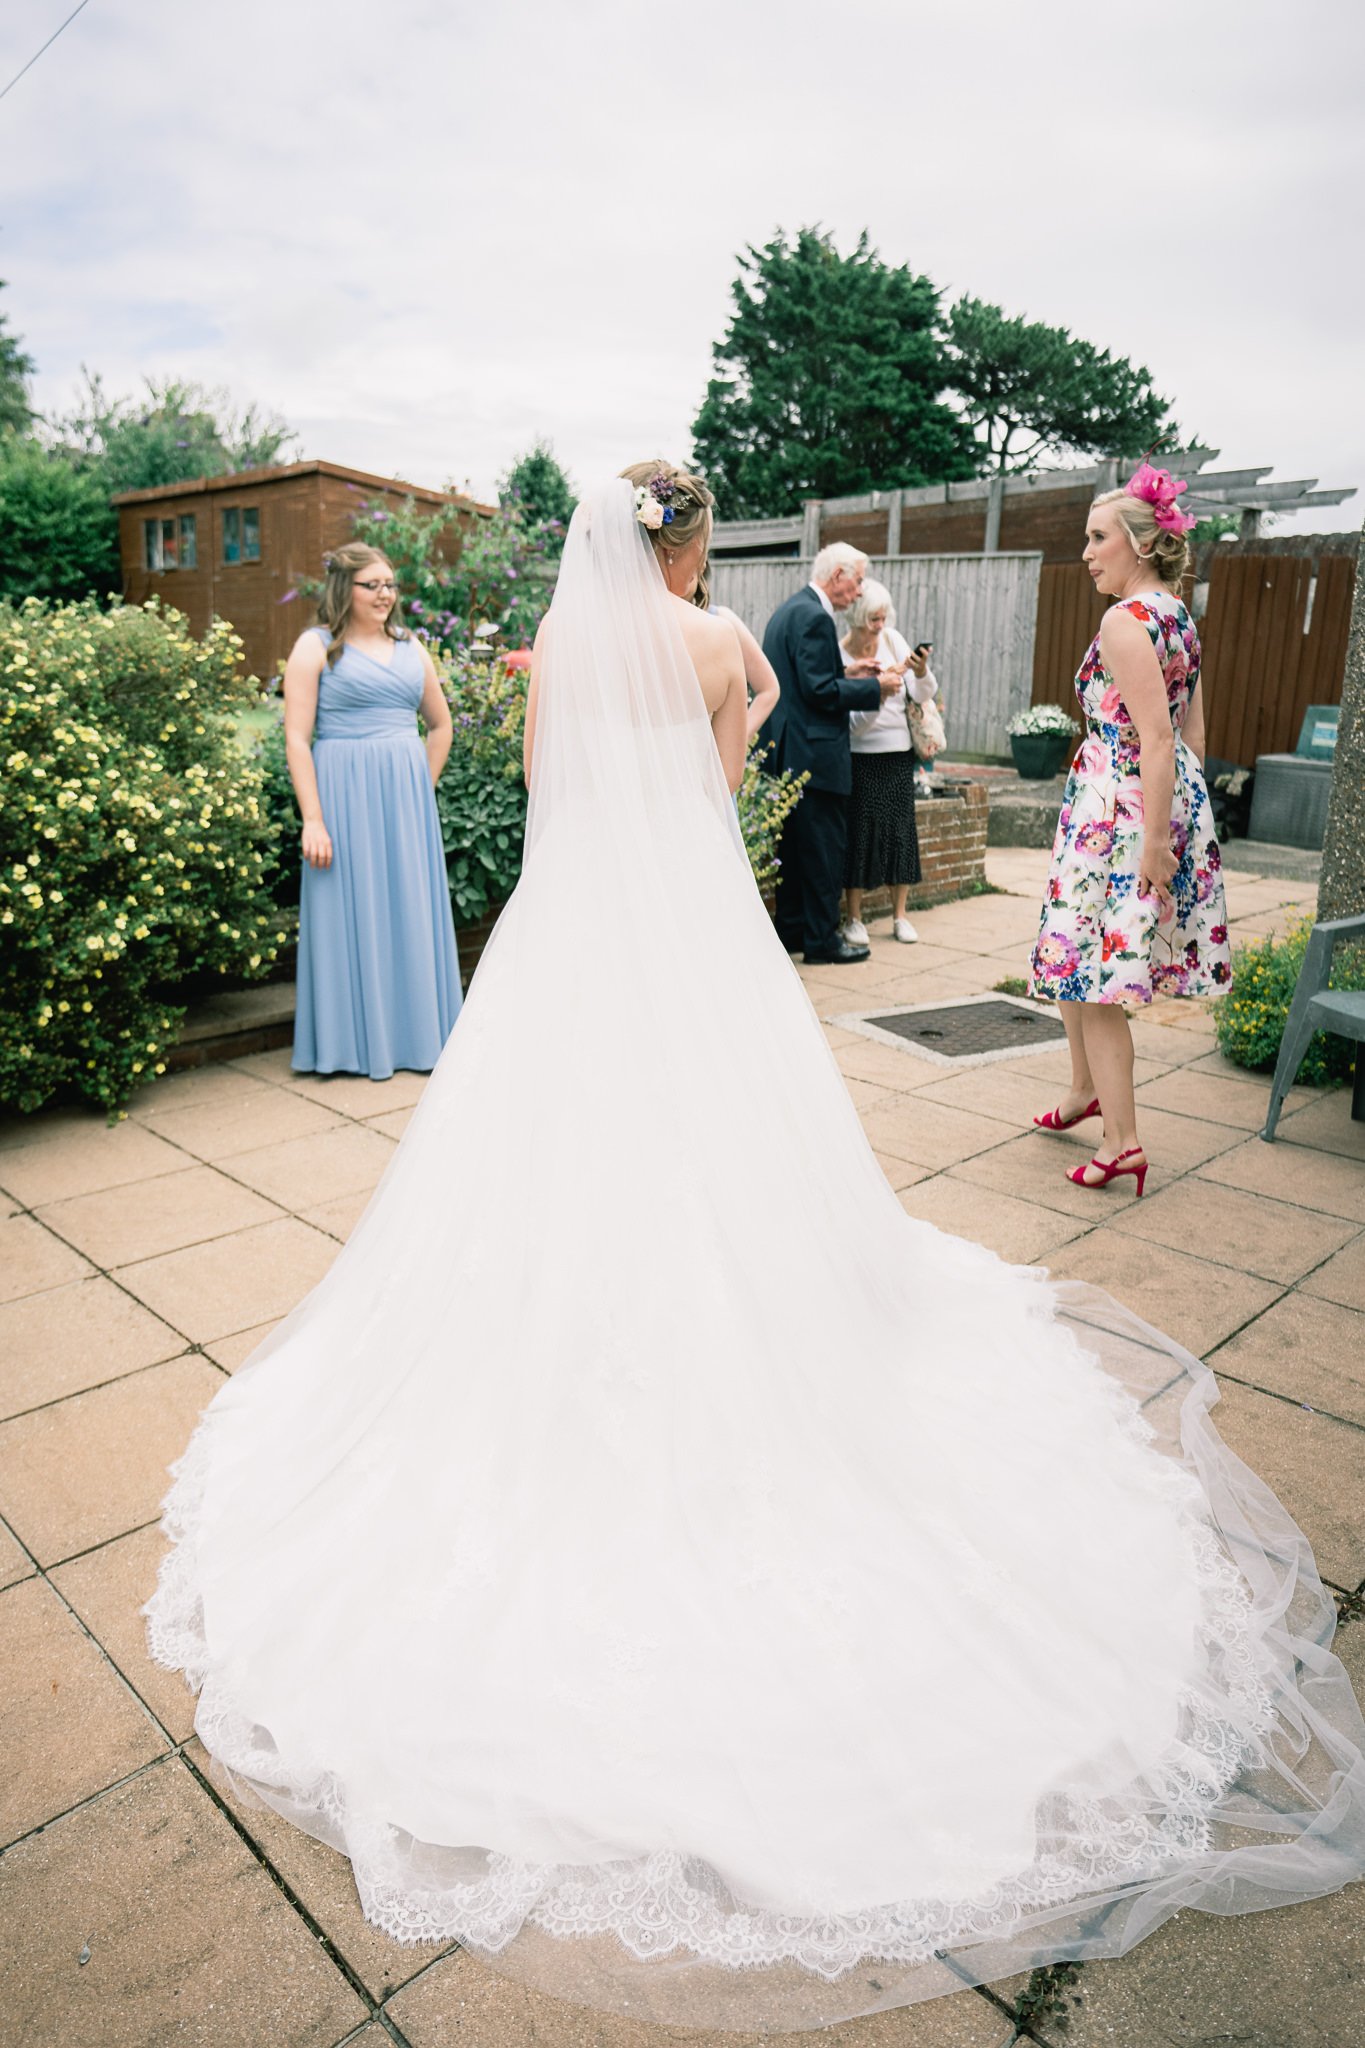 Emma & Will's wedding at Sunninghill, Dorchester in Dorset, UK-23.jpg